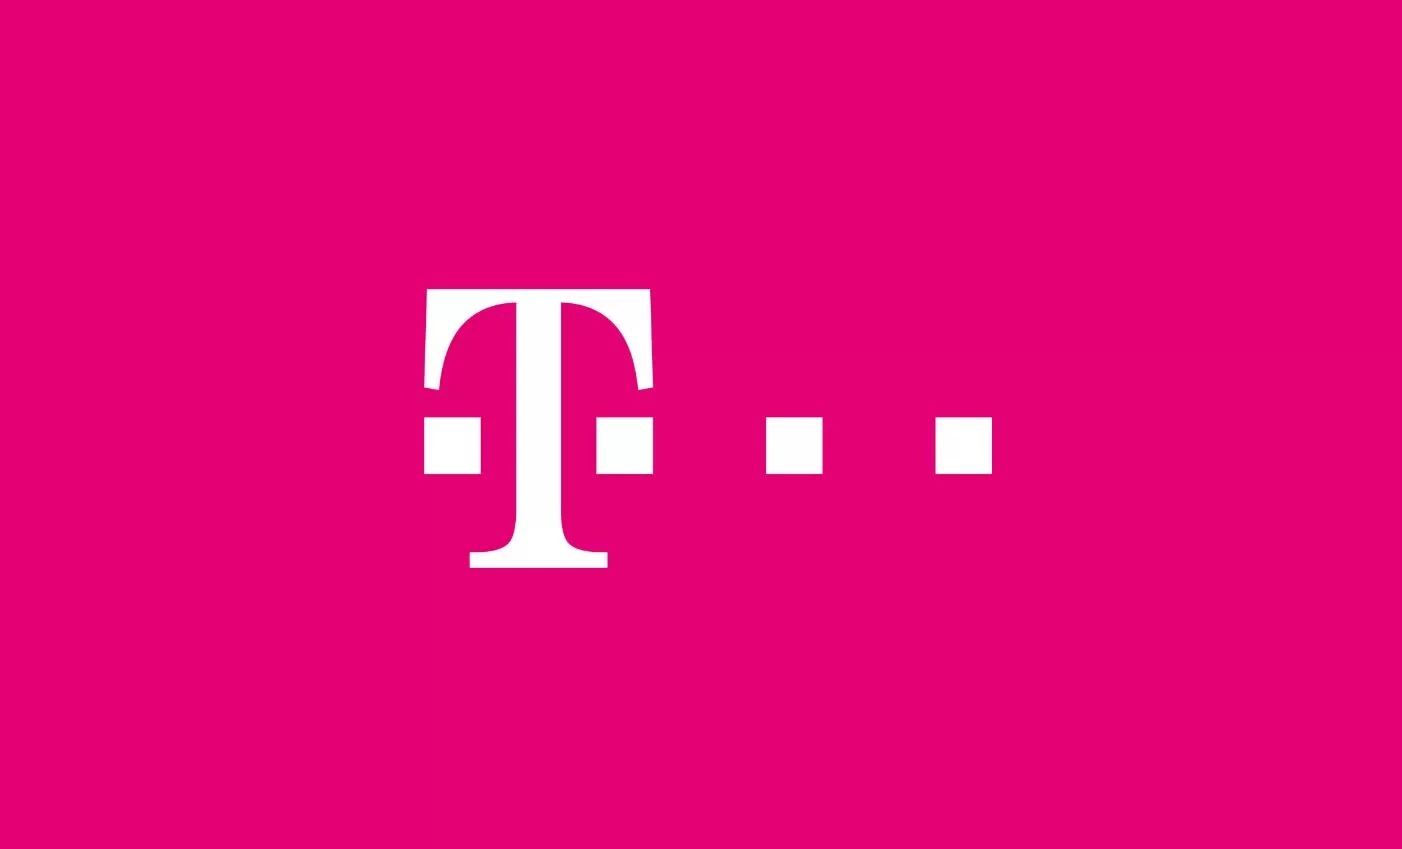 Telekom kollaborációs és irodaterek  Logo | távközlés,HAY,europadesign,HermanMiller